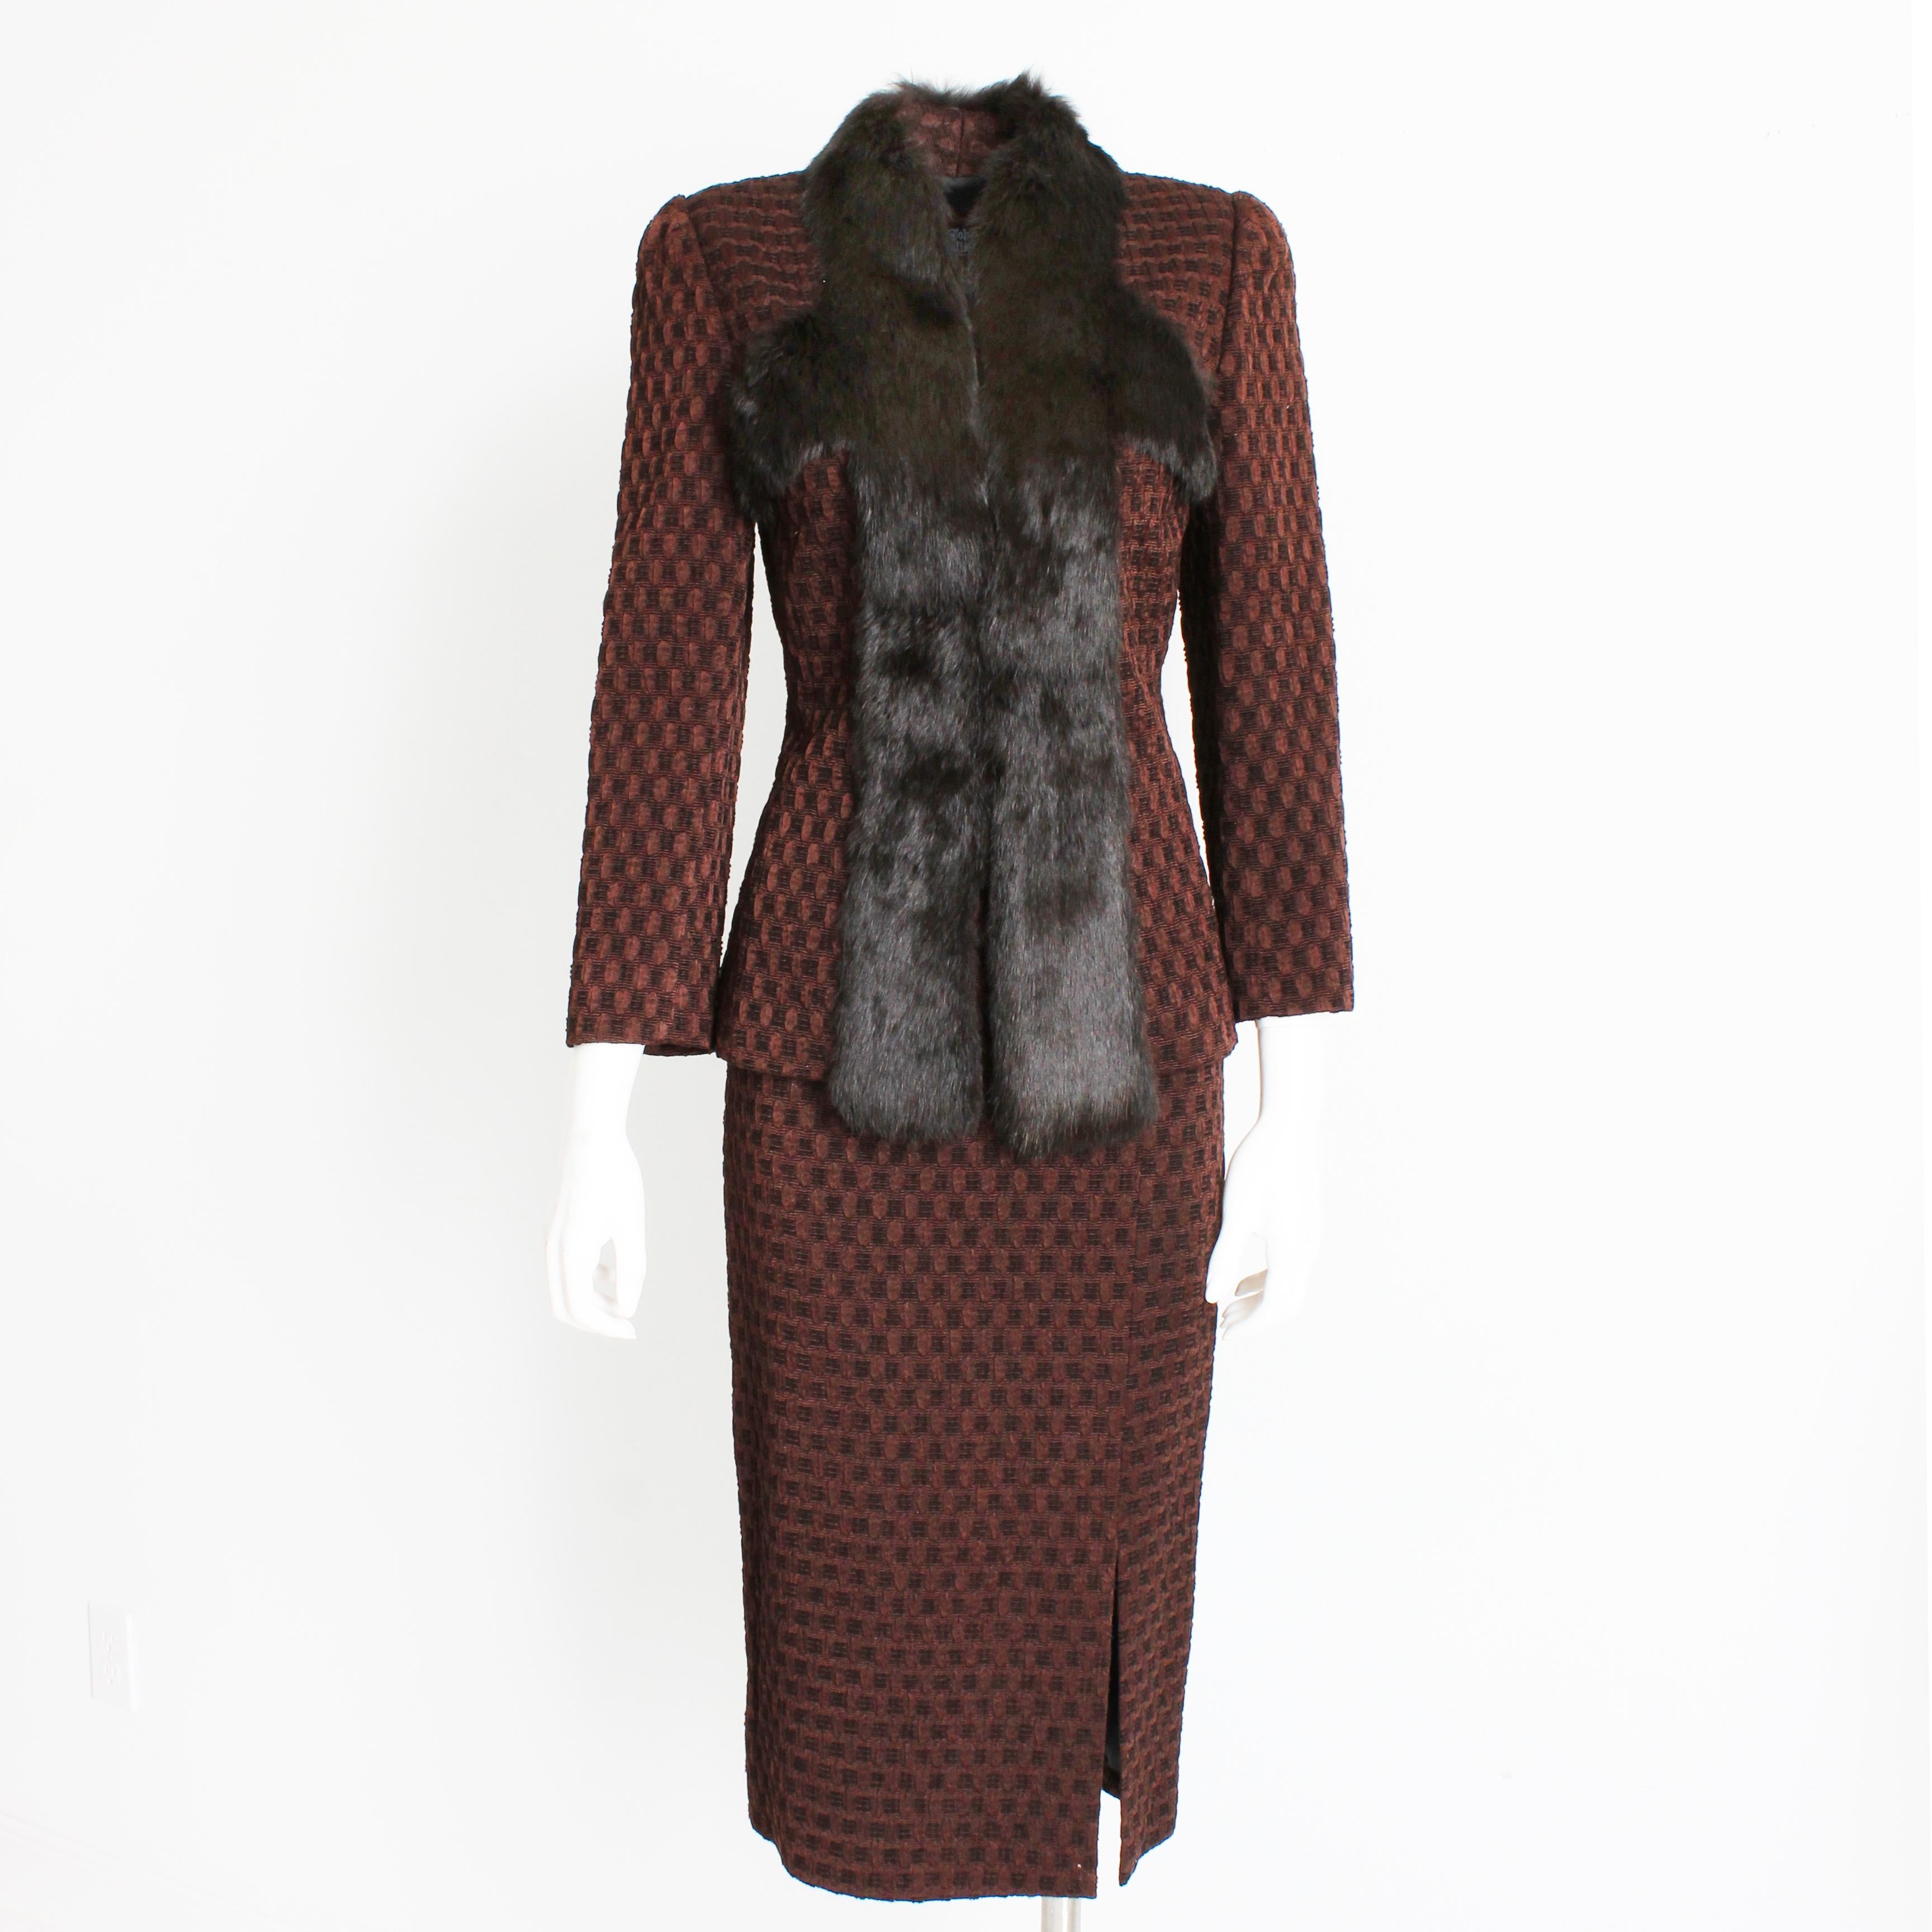 Cet incroyable ensemble veste et jupe a été réalisé par John Galliano, très probablement à la fin des années 90 ou au début des années 2000. 

Réalisée dans un merveilleux tricot texturé de soie et de laine brunes, cette veste est ajustée et garnie